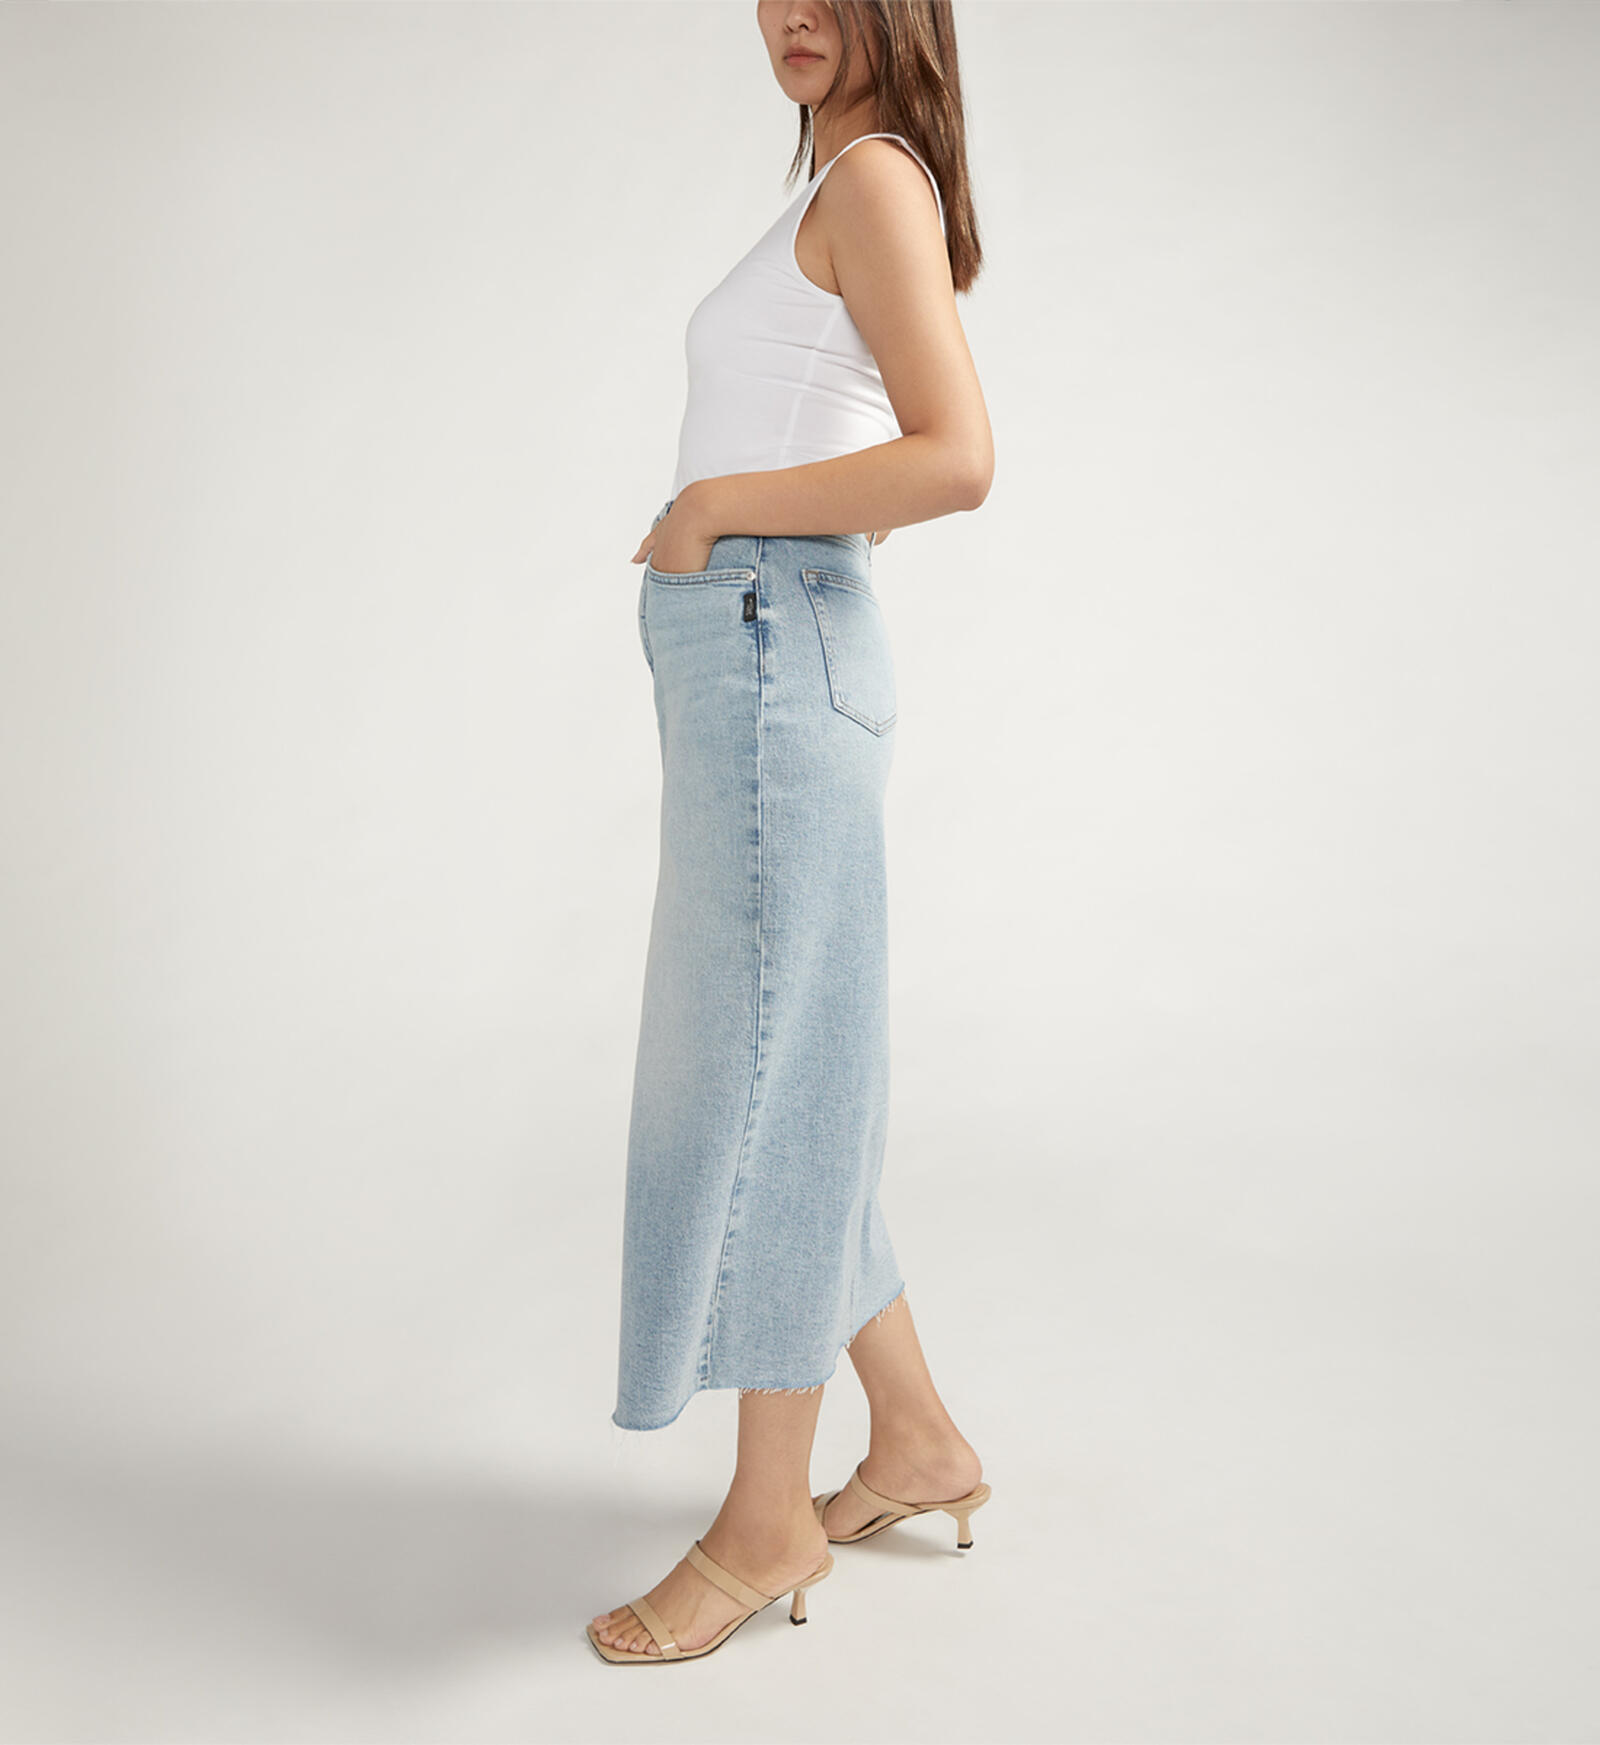 Buy Front-Slit Midi Jean Skirt for CAD 88.00